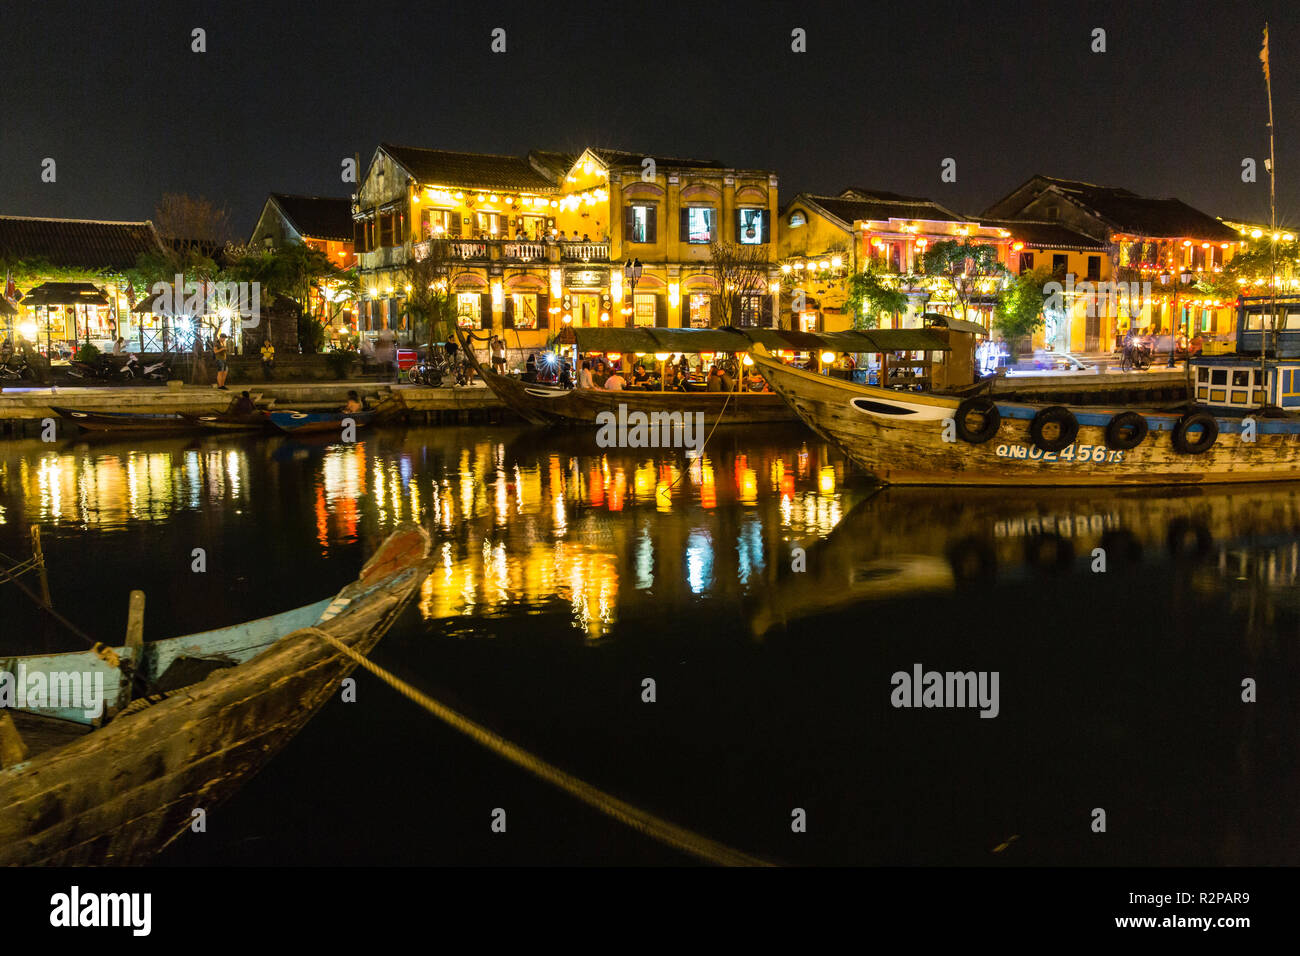 Beleuchtet, historische Altstadt von Hoi An, von den gegenüberliegenden Flußufer, Laternen auf dem Wasser spiegelt, Boote im Vordergrund. Stockfoto